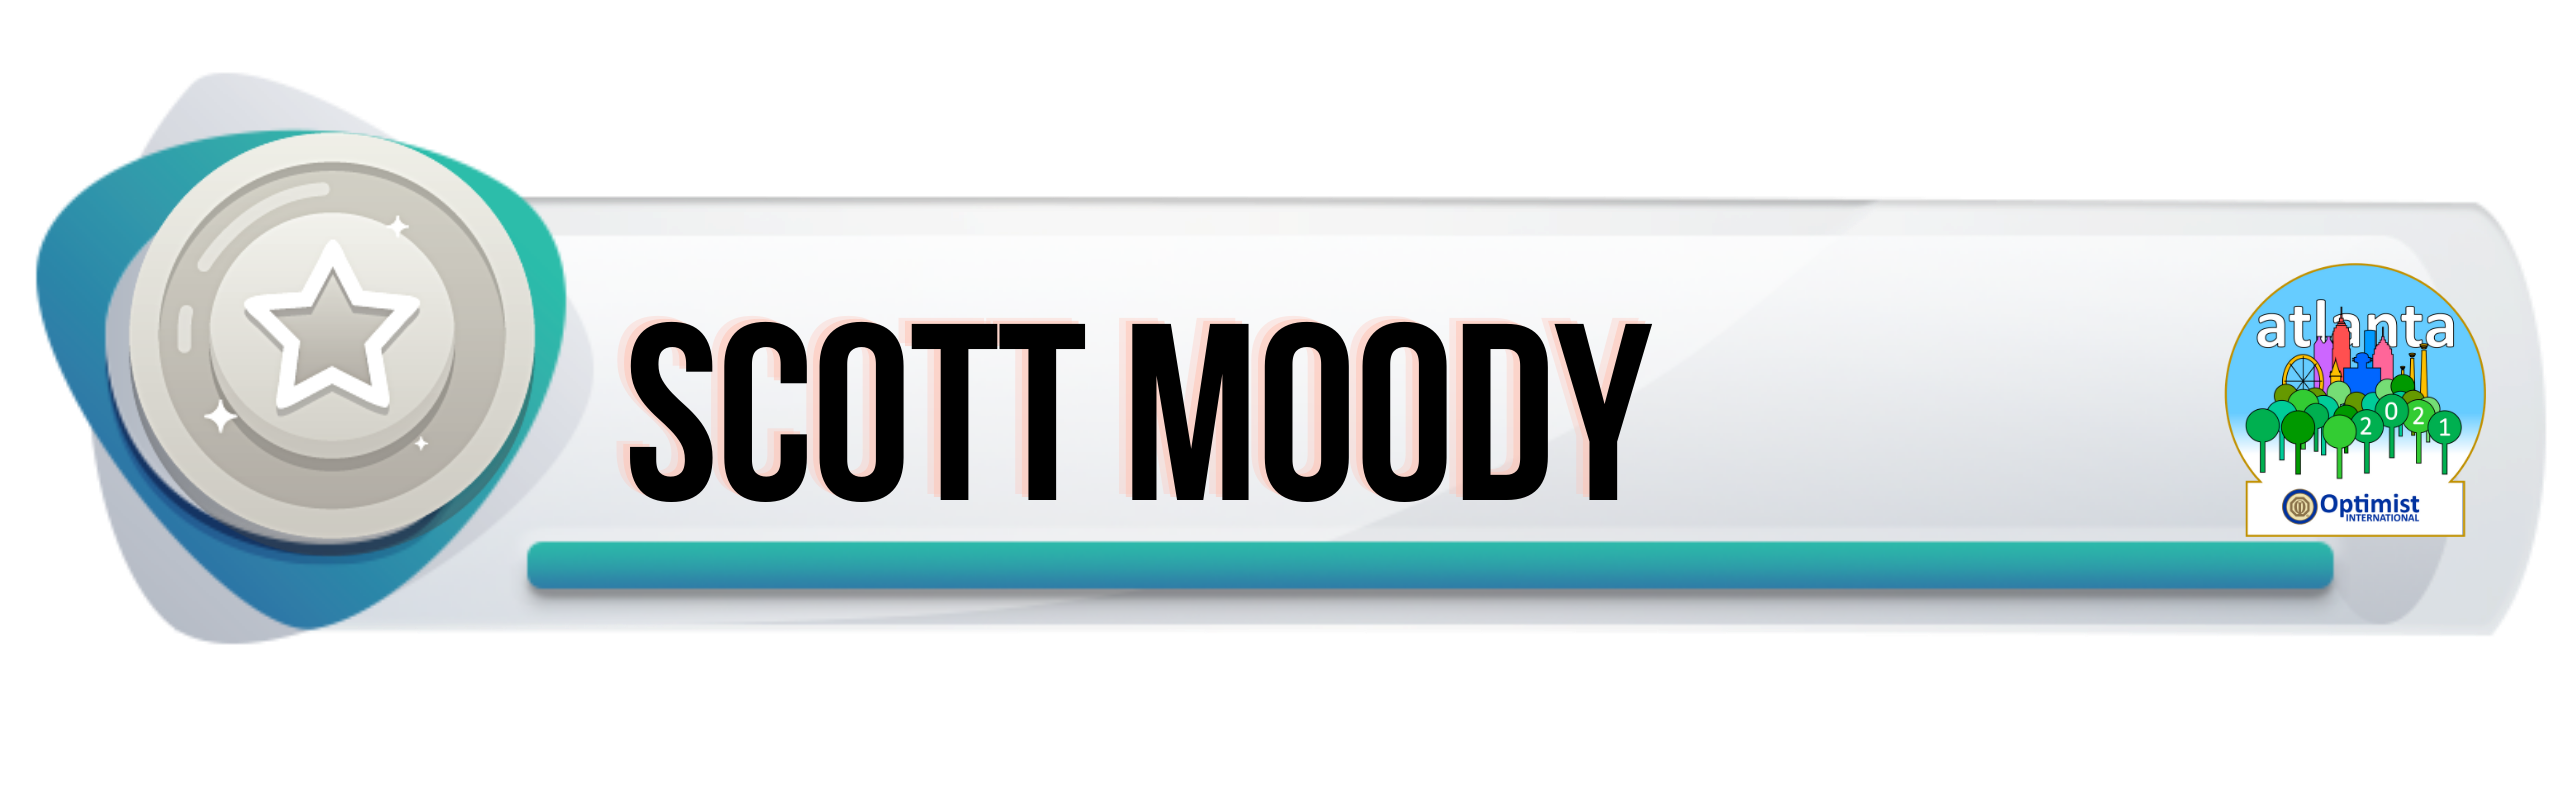 Scott Moody